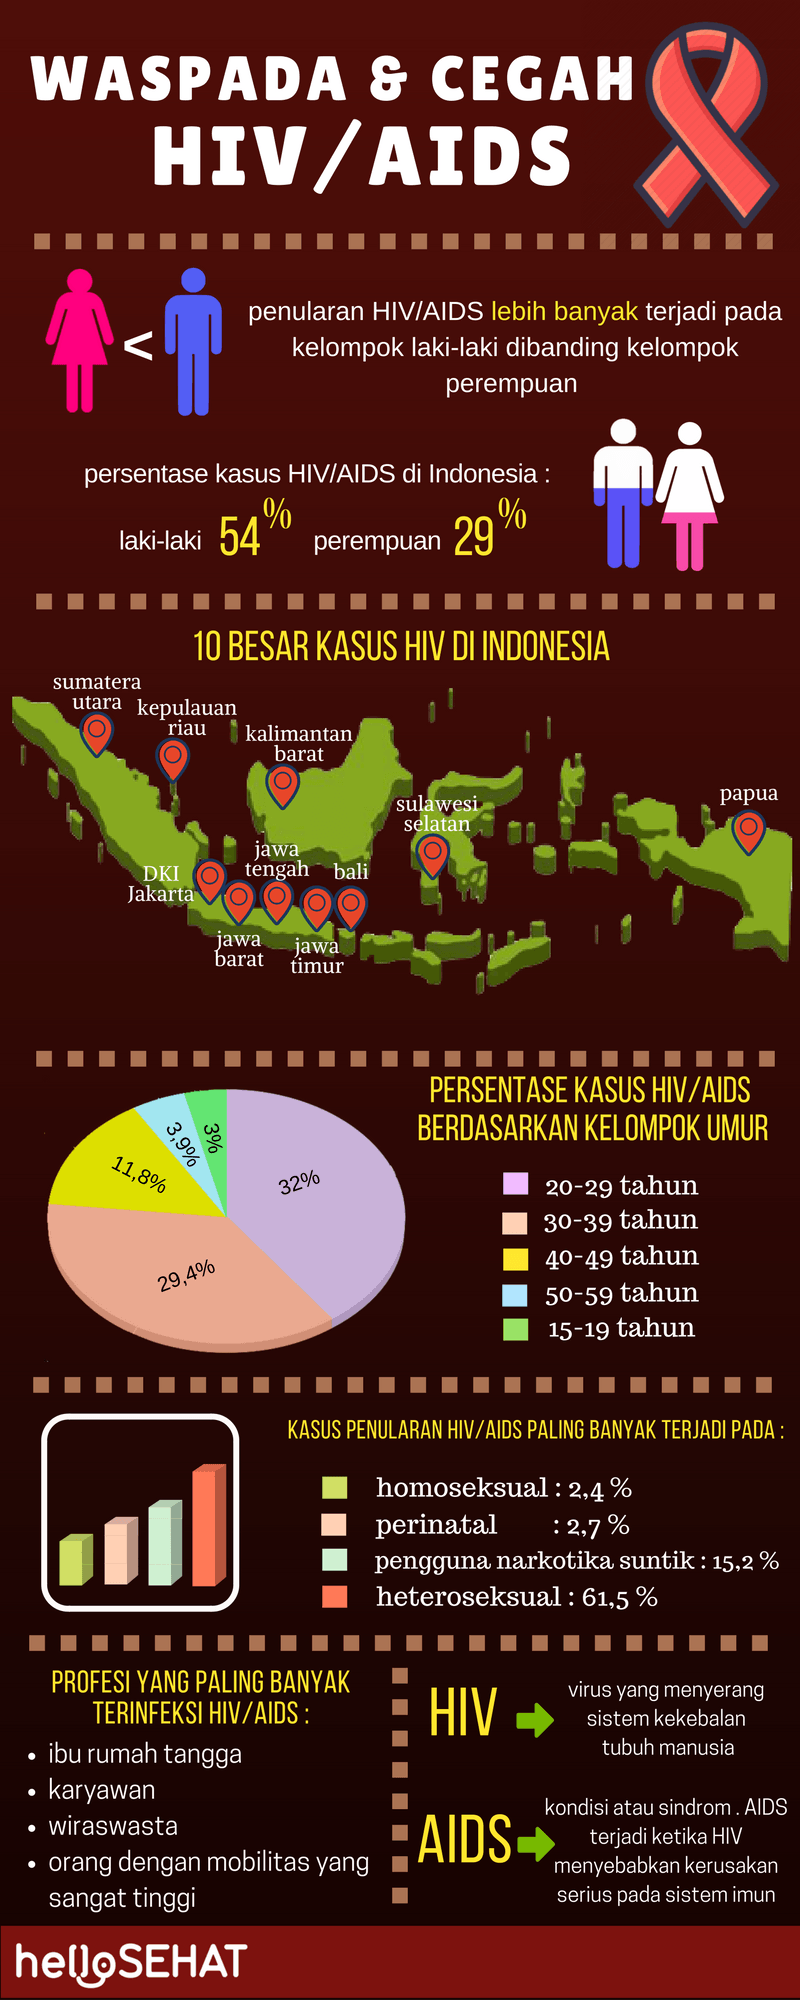 Hola hiv sano ayuda infografía en Indonesia